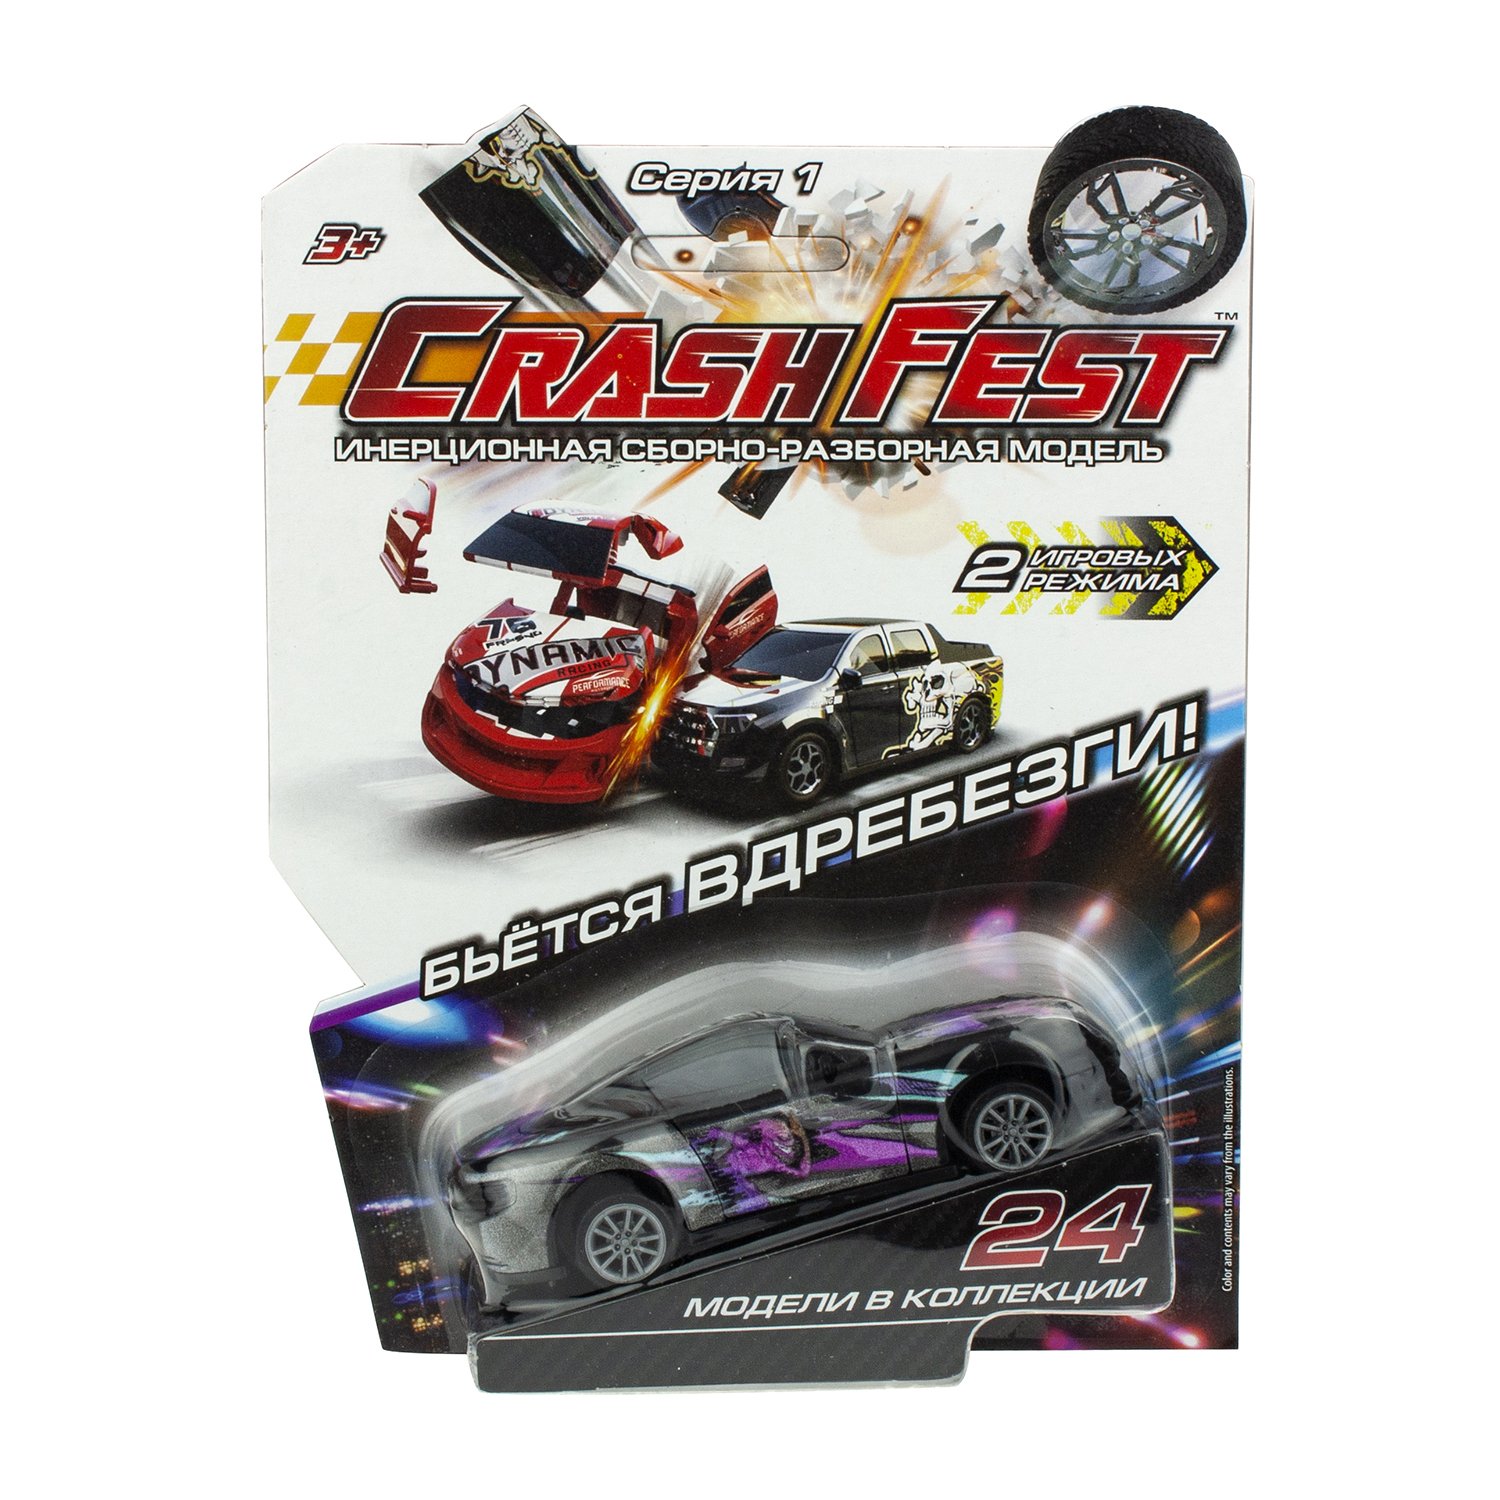 Инерционная сборно-разборная модель CrashFest 2 в 1 - Ghost Racer, 10 см  